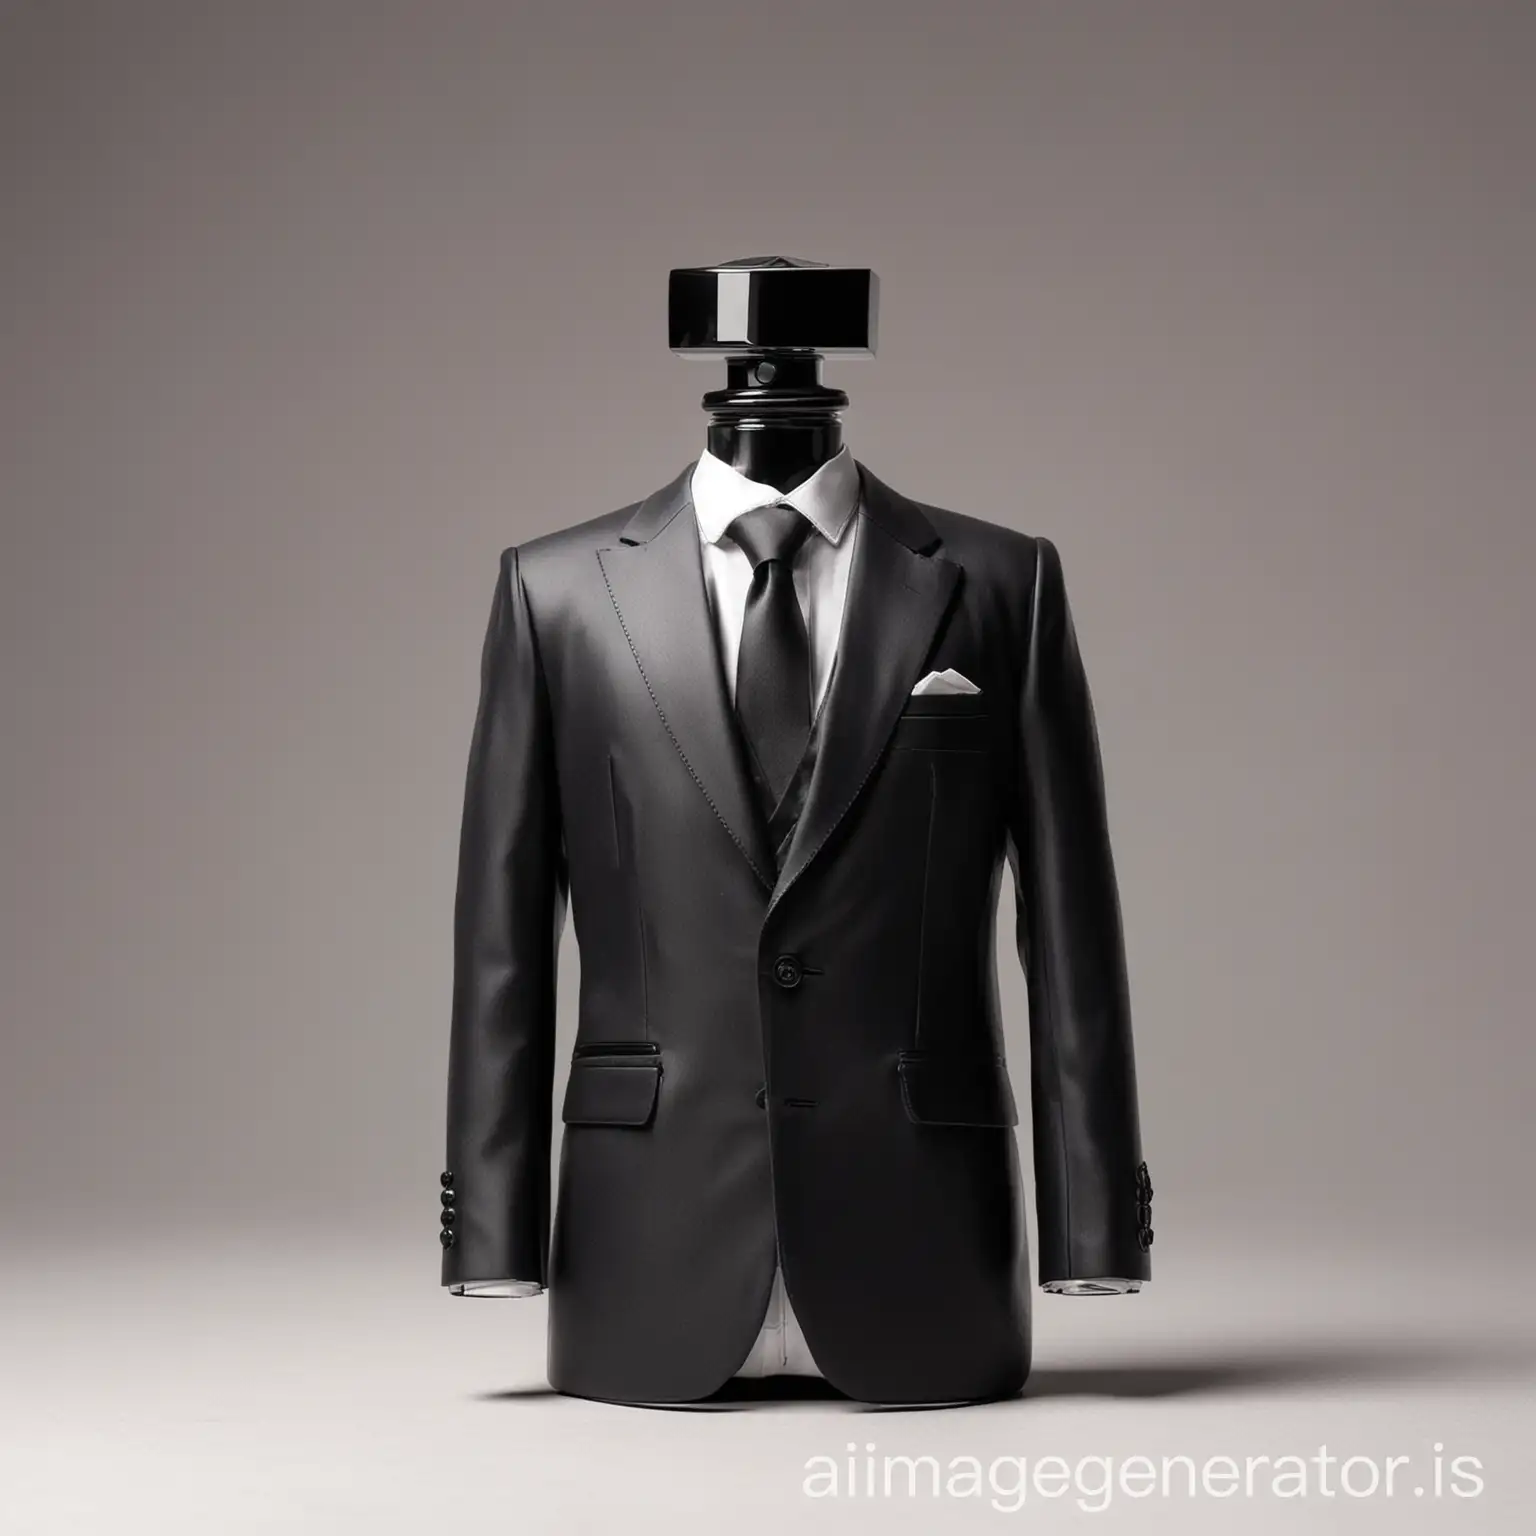 man suit in shape of perfume bottle